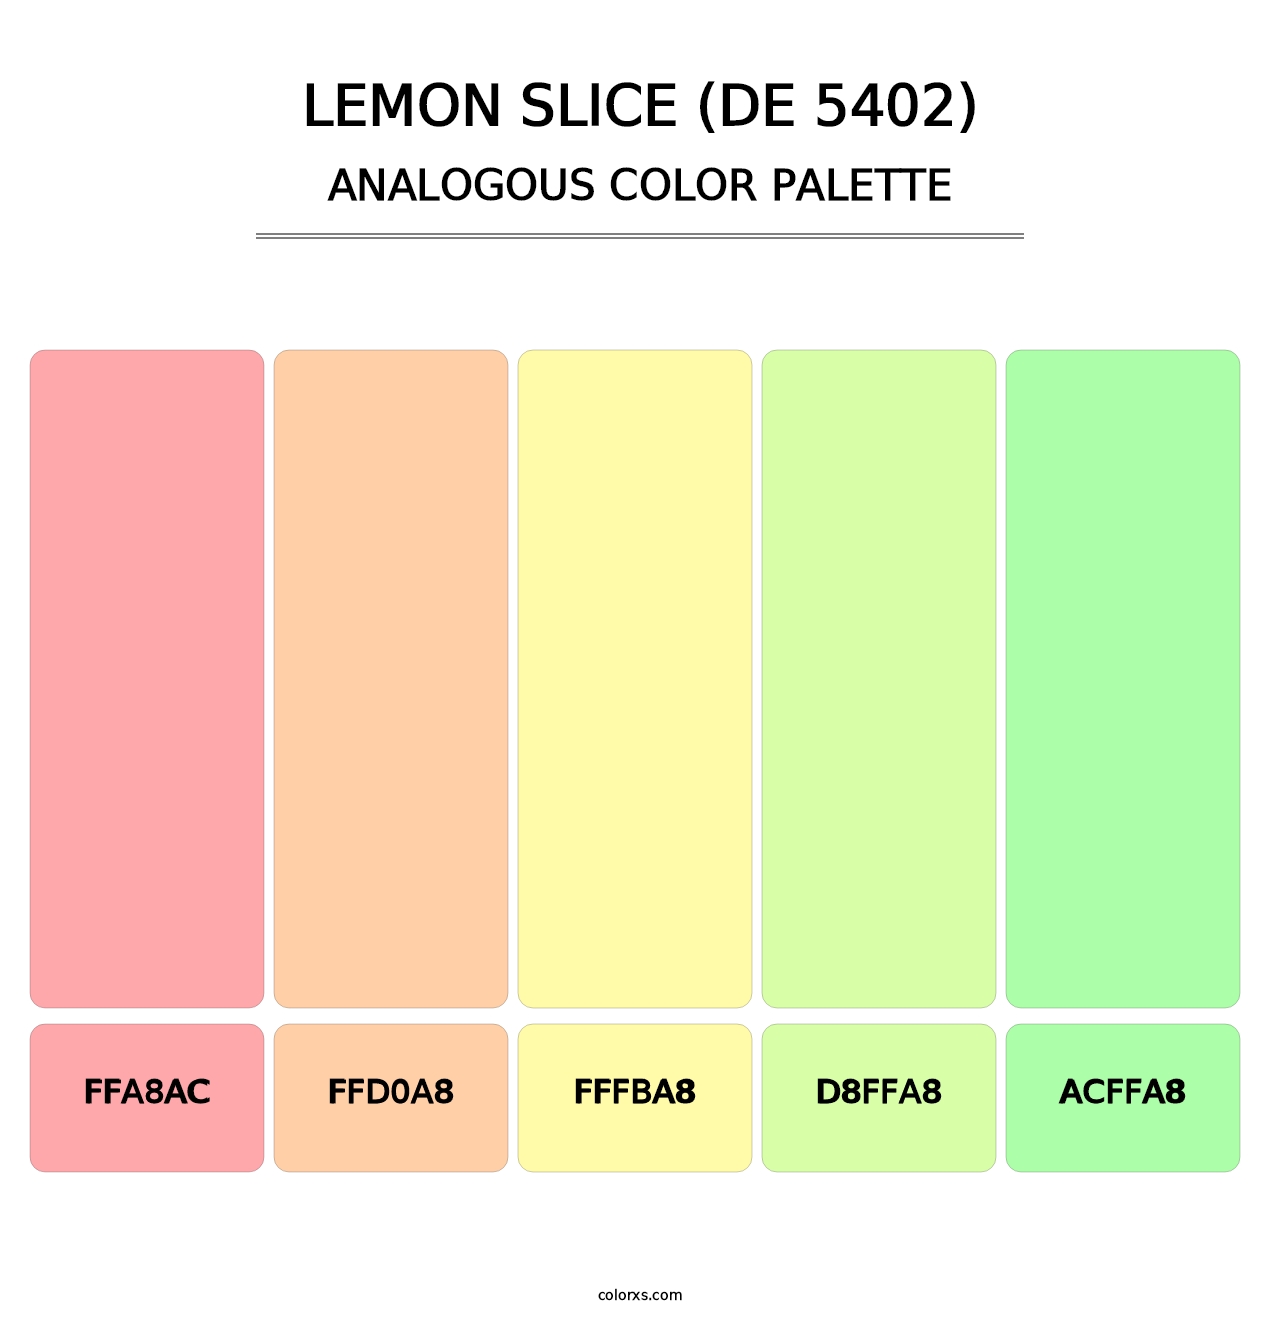 Lemon Slice (DE 5402) - Analogous Color Palette